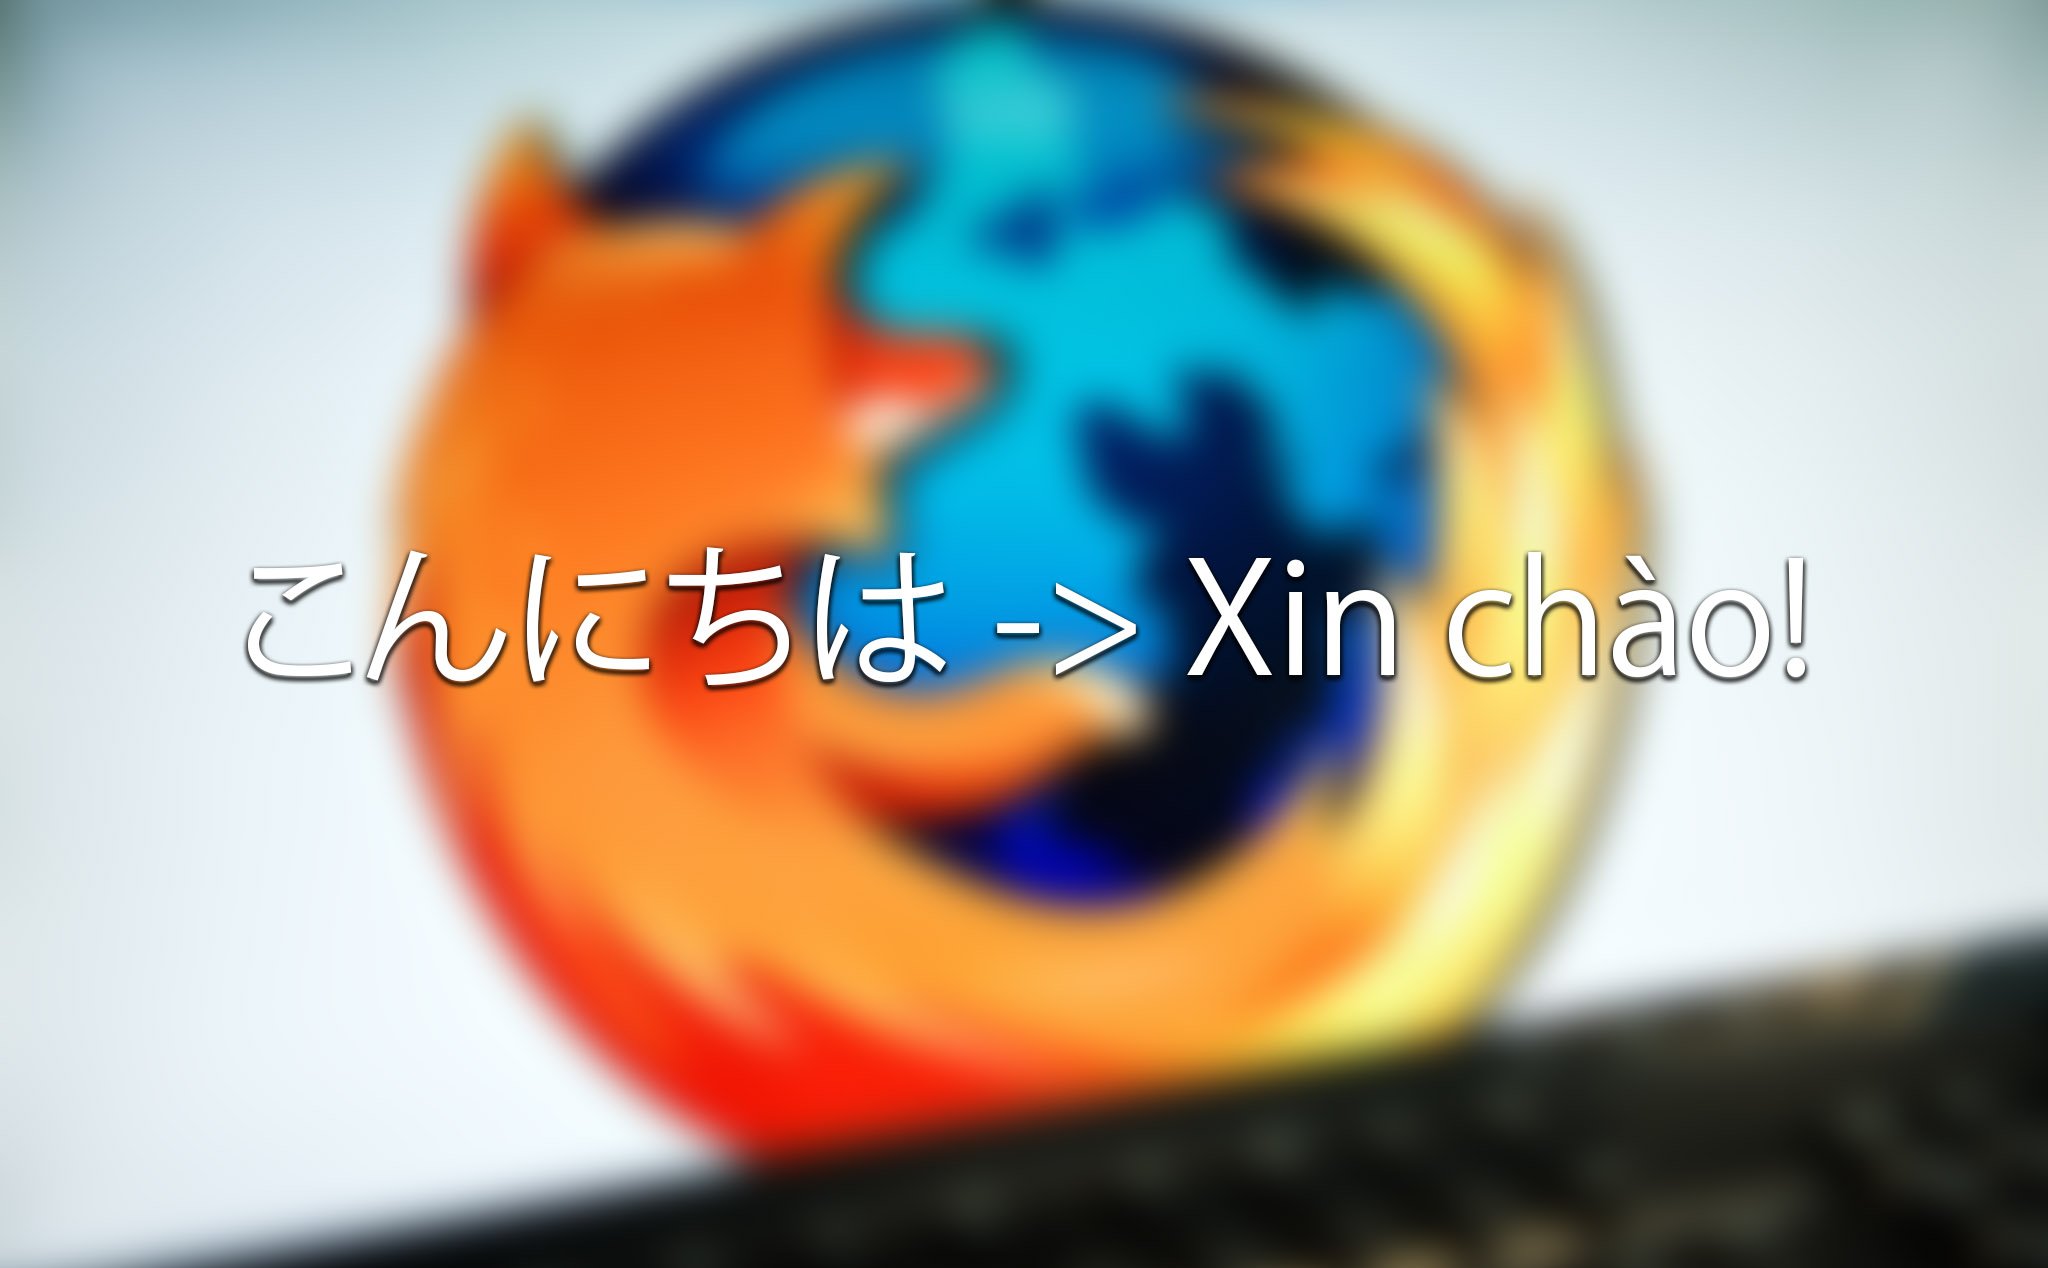 Firefox sắp có tính năng dịch trang web giống như Chrome, dùng machine learning để xử lý